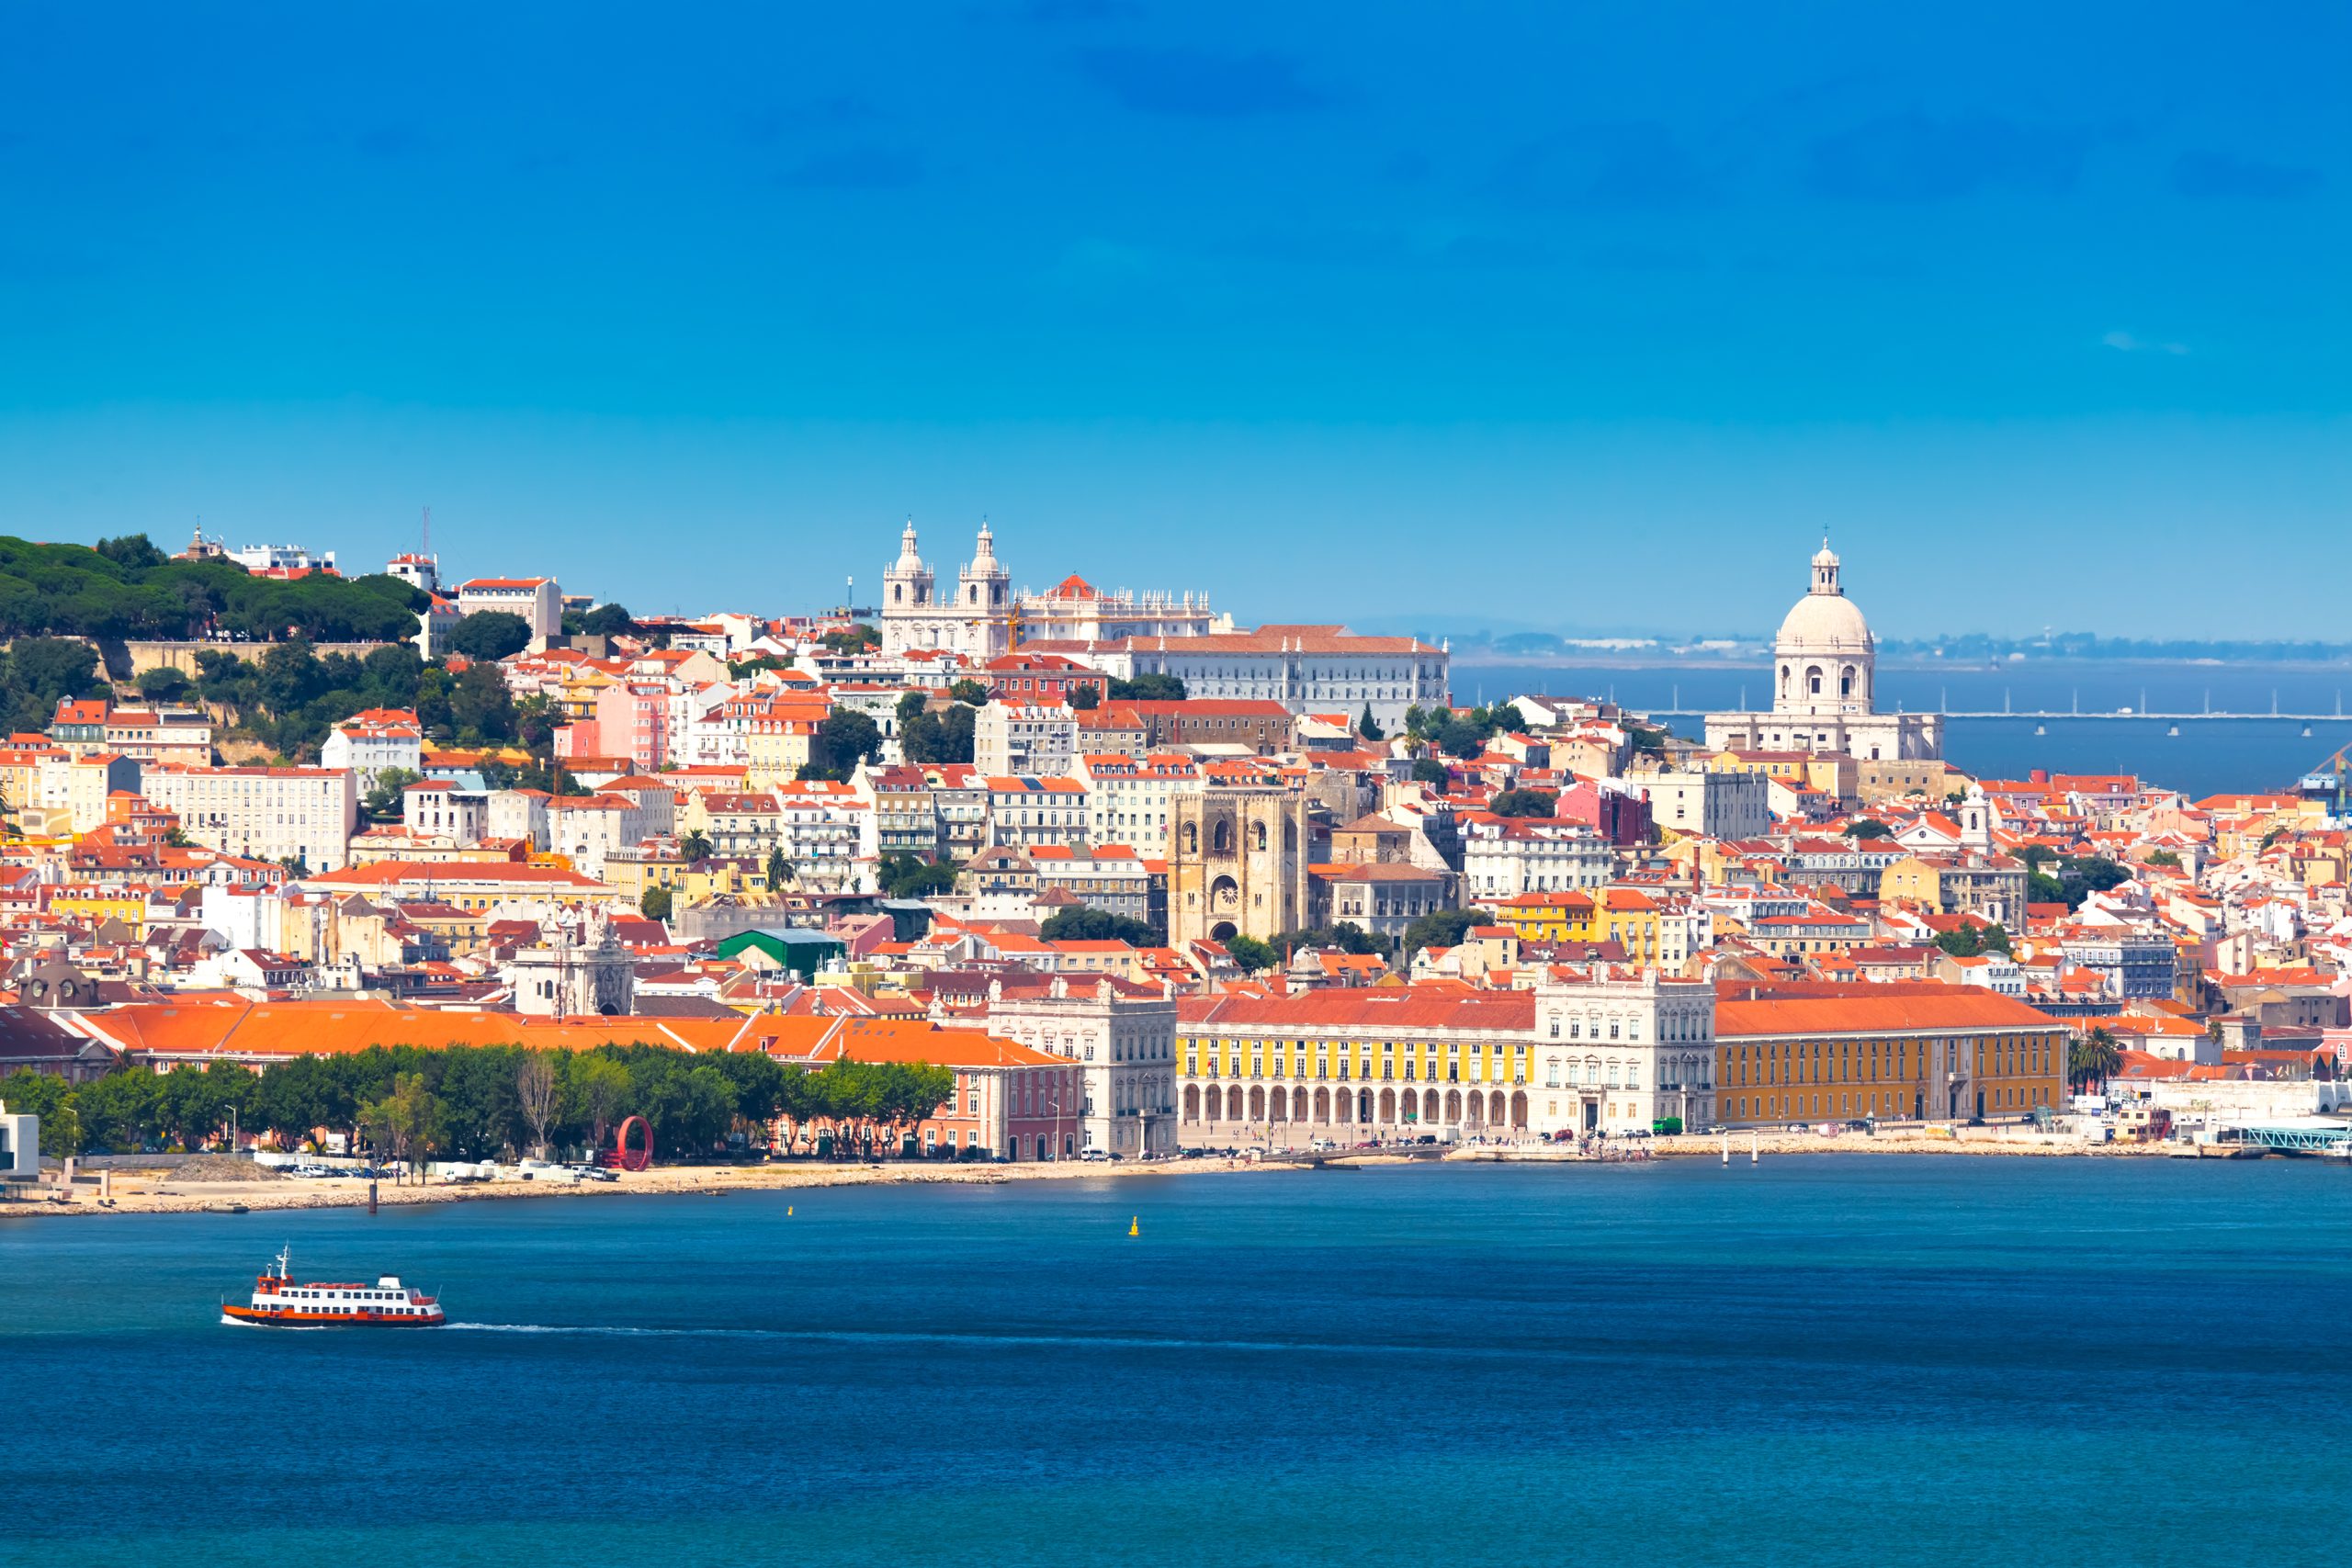 Consegue imaginar qual é a zona mais movimentada de Lisboa?